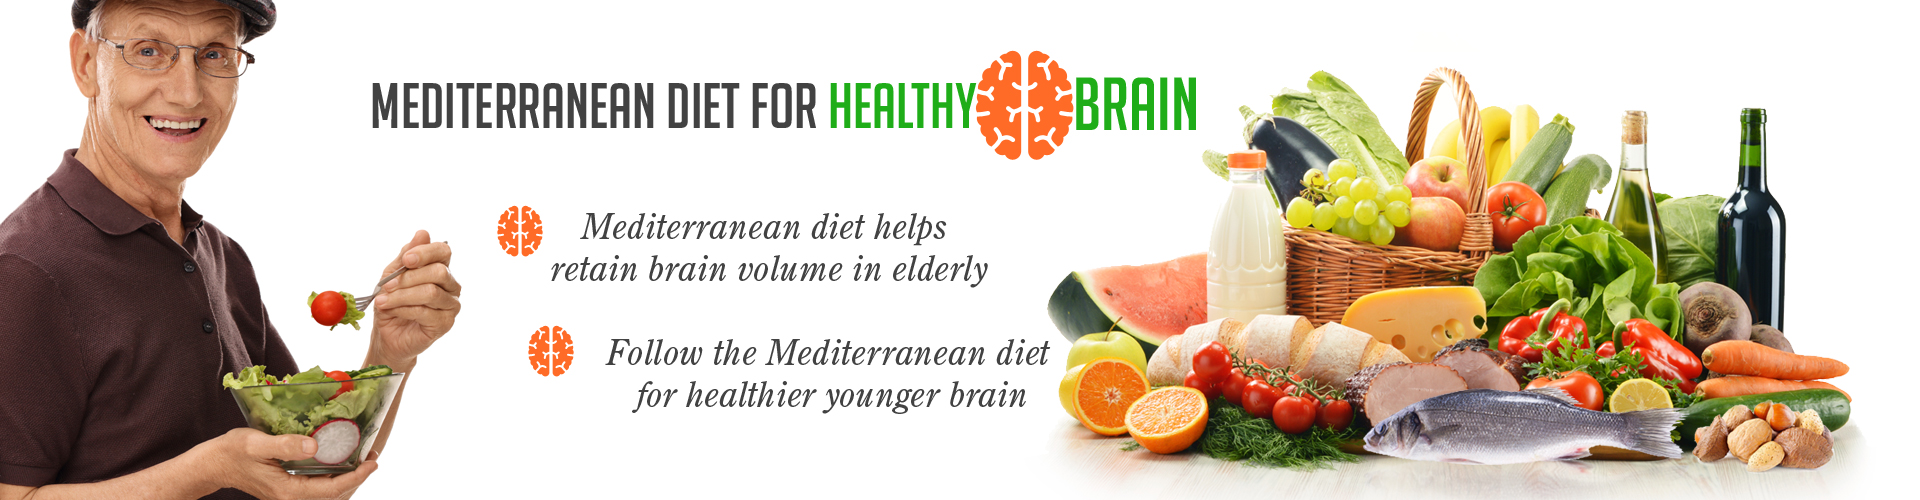 Mediterranean diet for healthy brain
- Mediterranean diet helps retain brain volume in elderly
- Follow the Mediterranean diet for healthier younger brain
